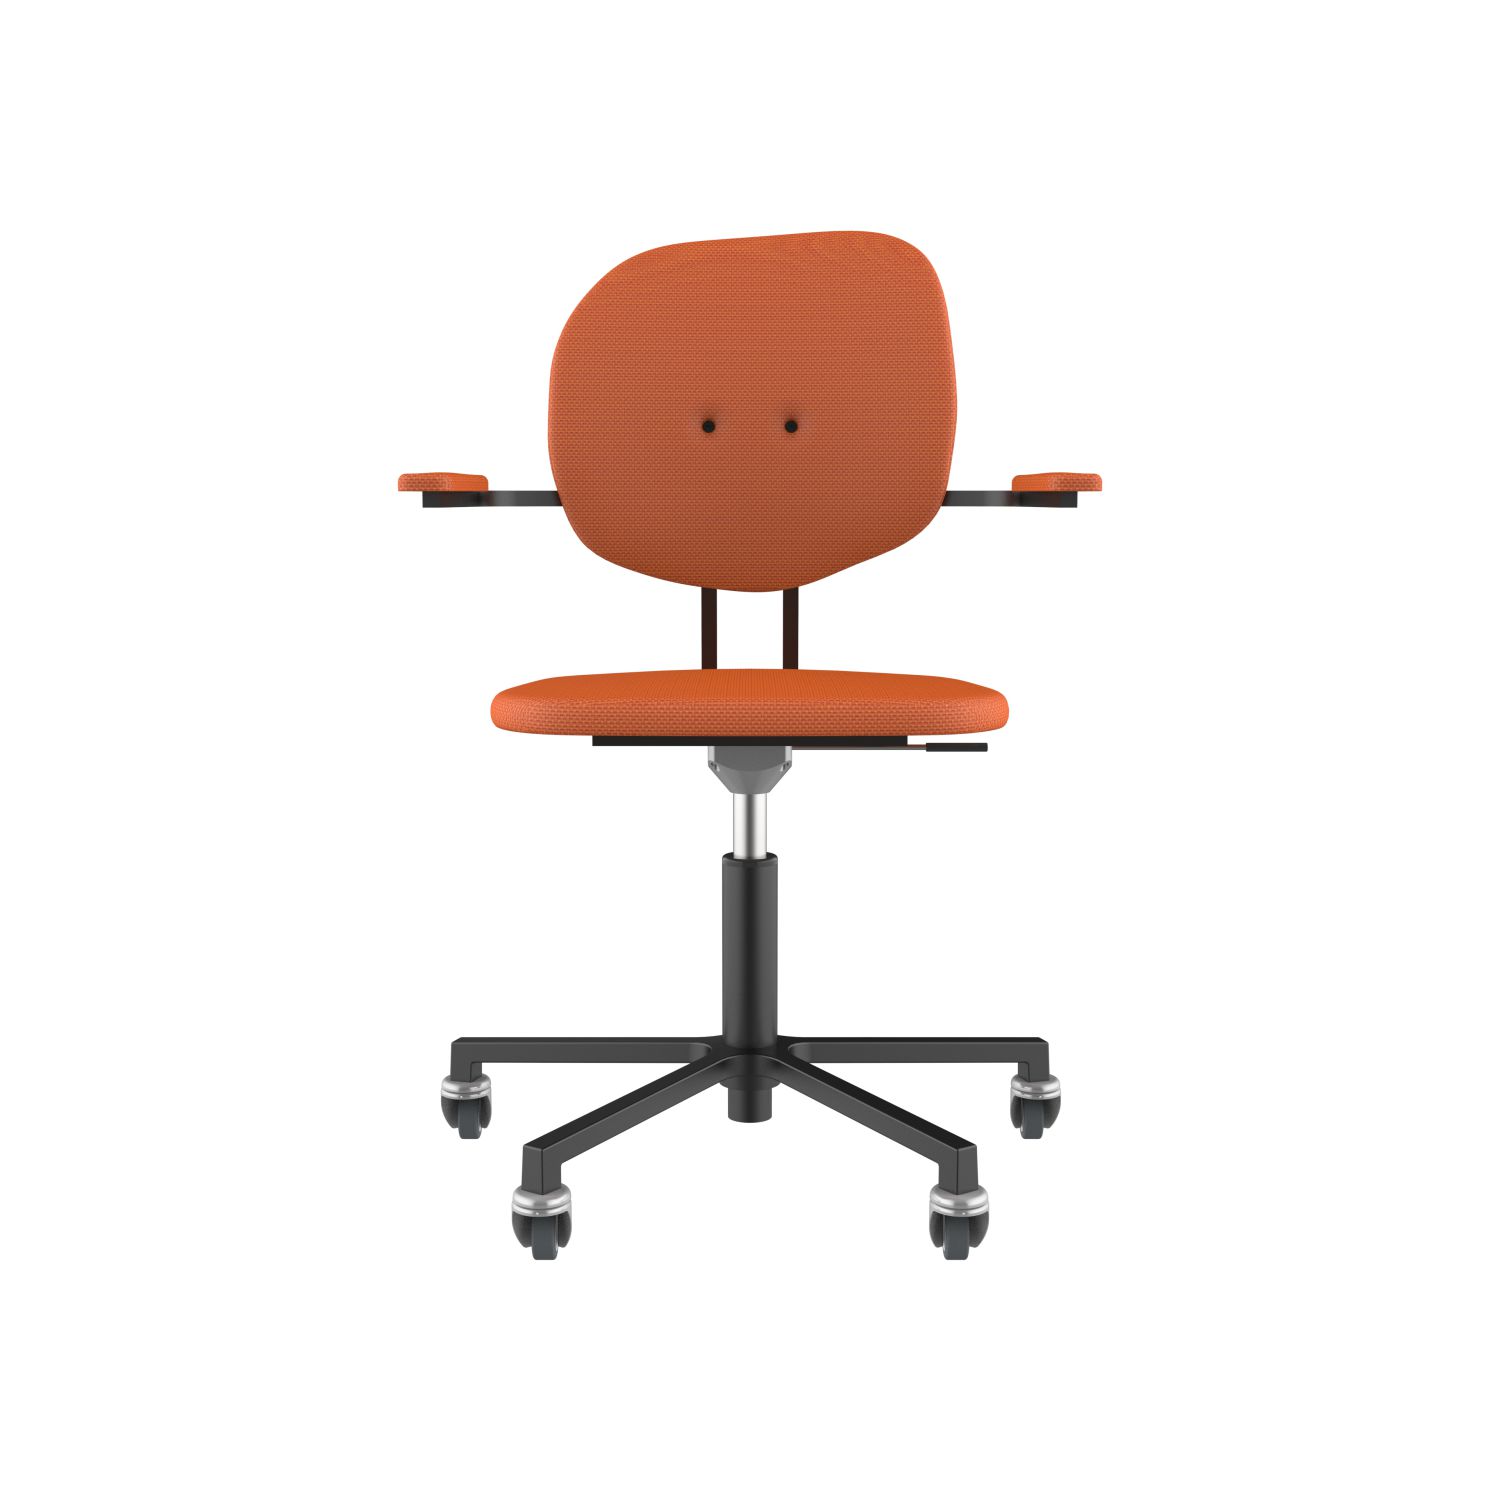 lensvelt maarten baas office chair with armrests backrest h burn orange 102 black ral9005 soft wheels